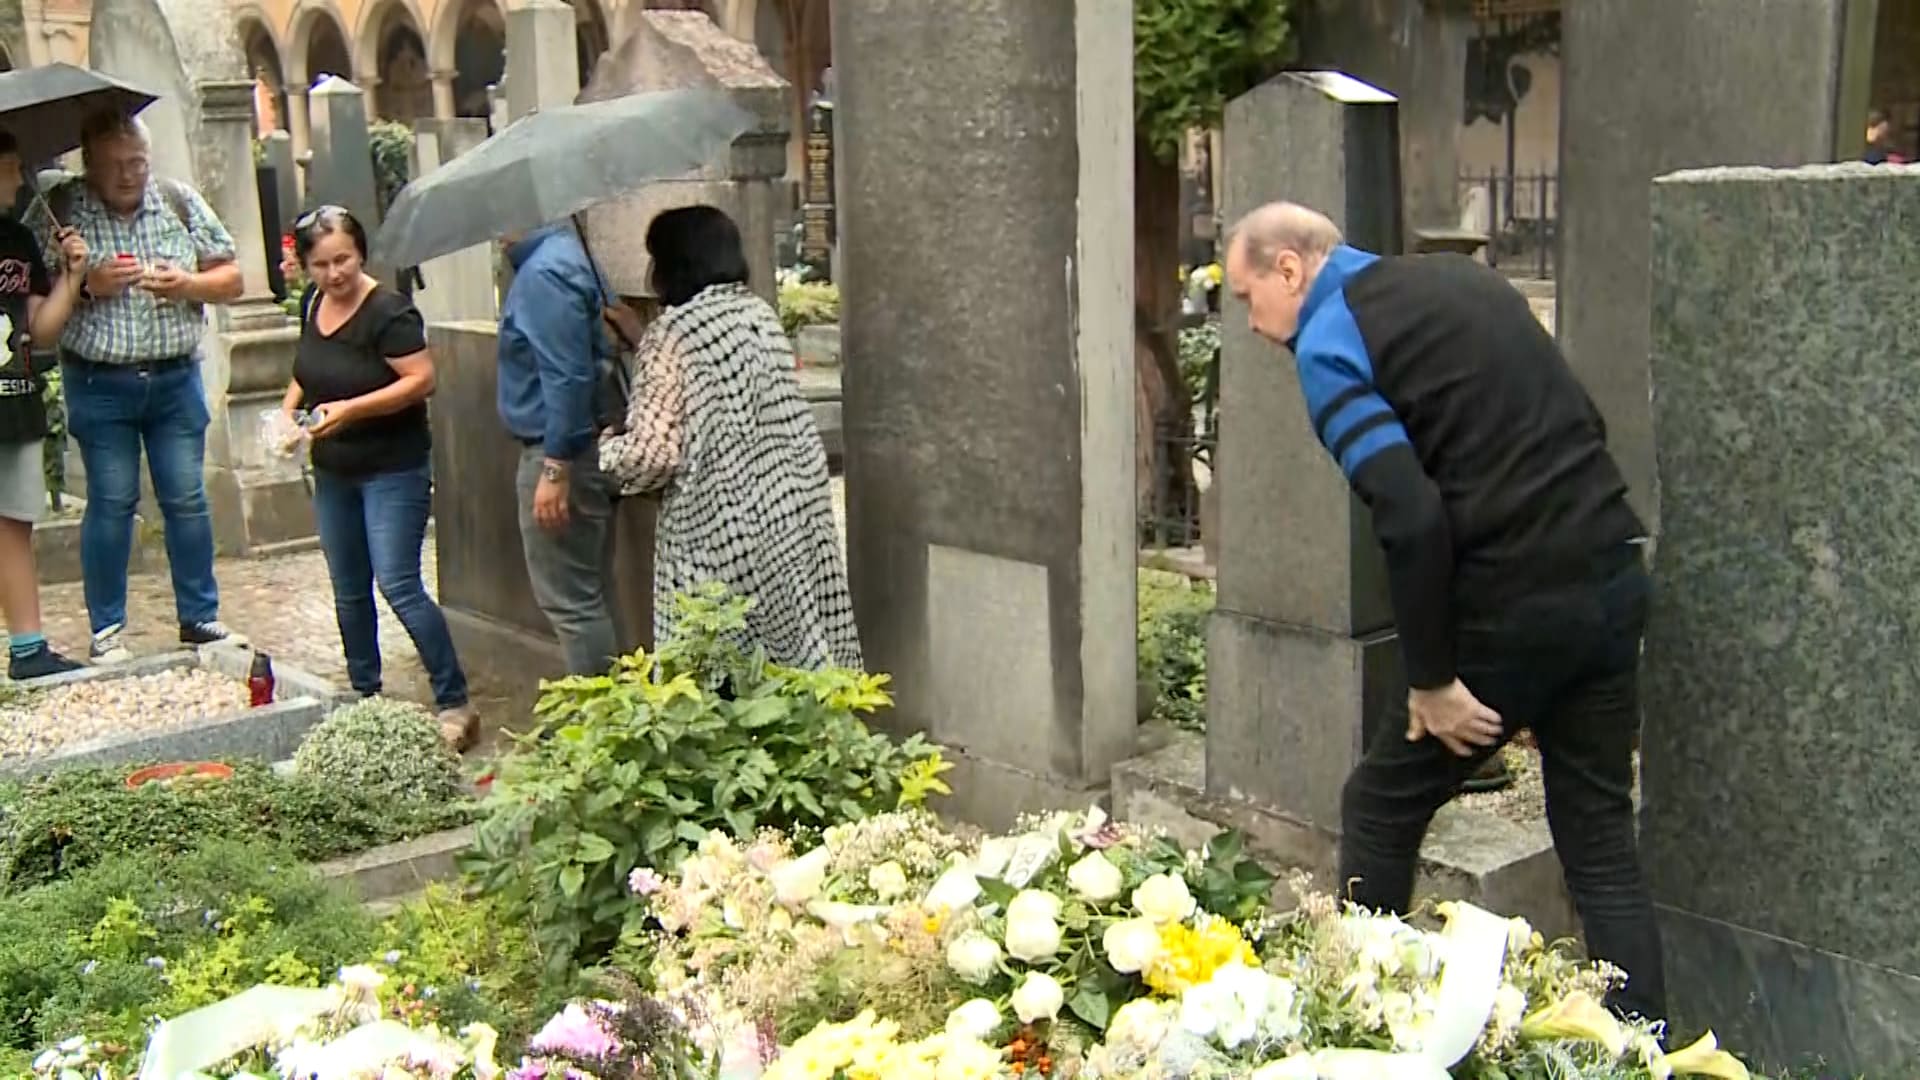 Štefan Margita zapálil svíčku u hrobu Hany Zagorové